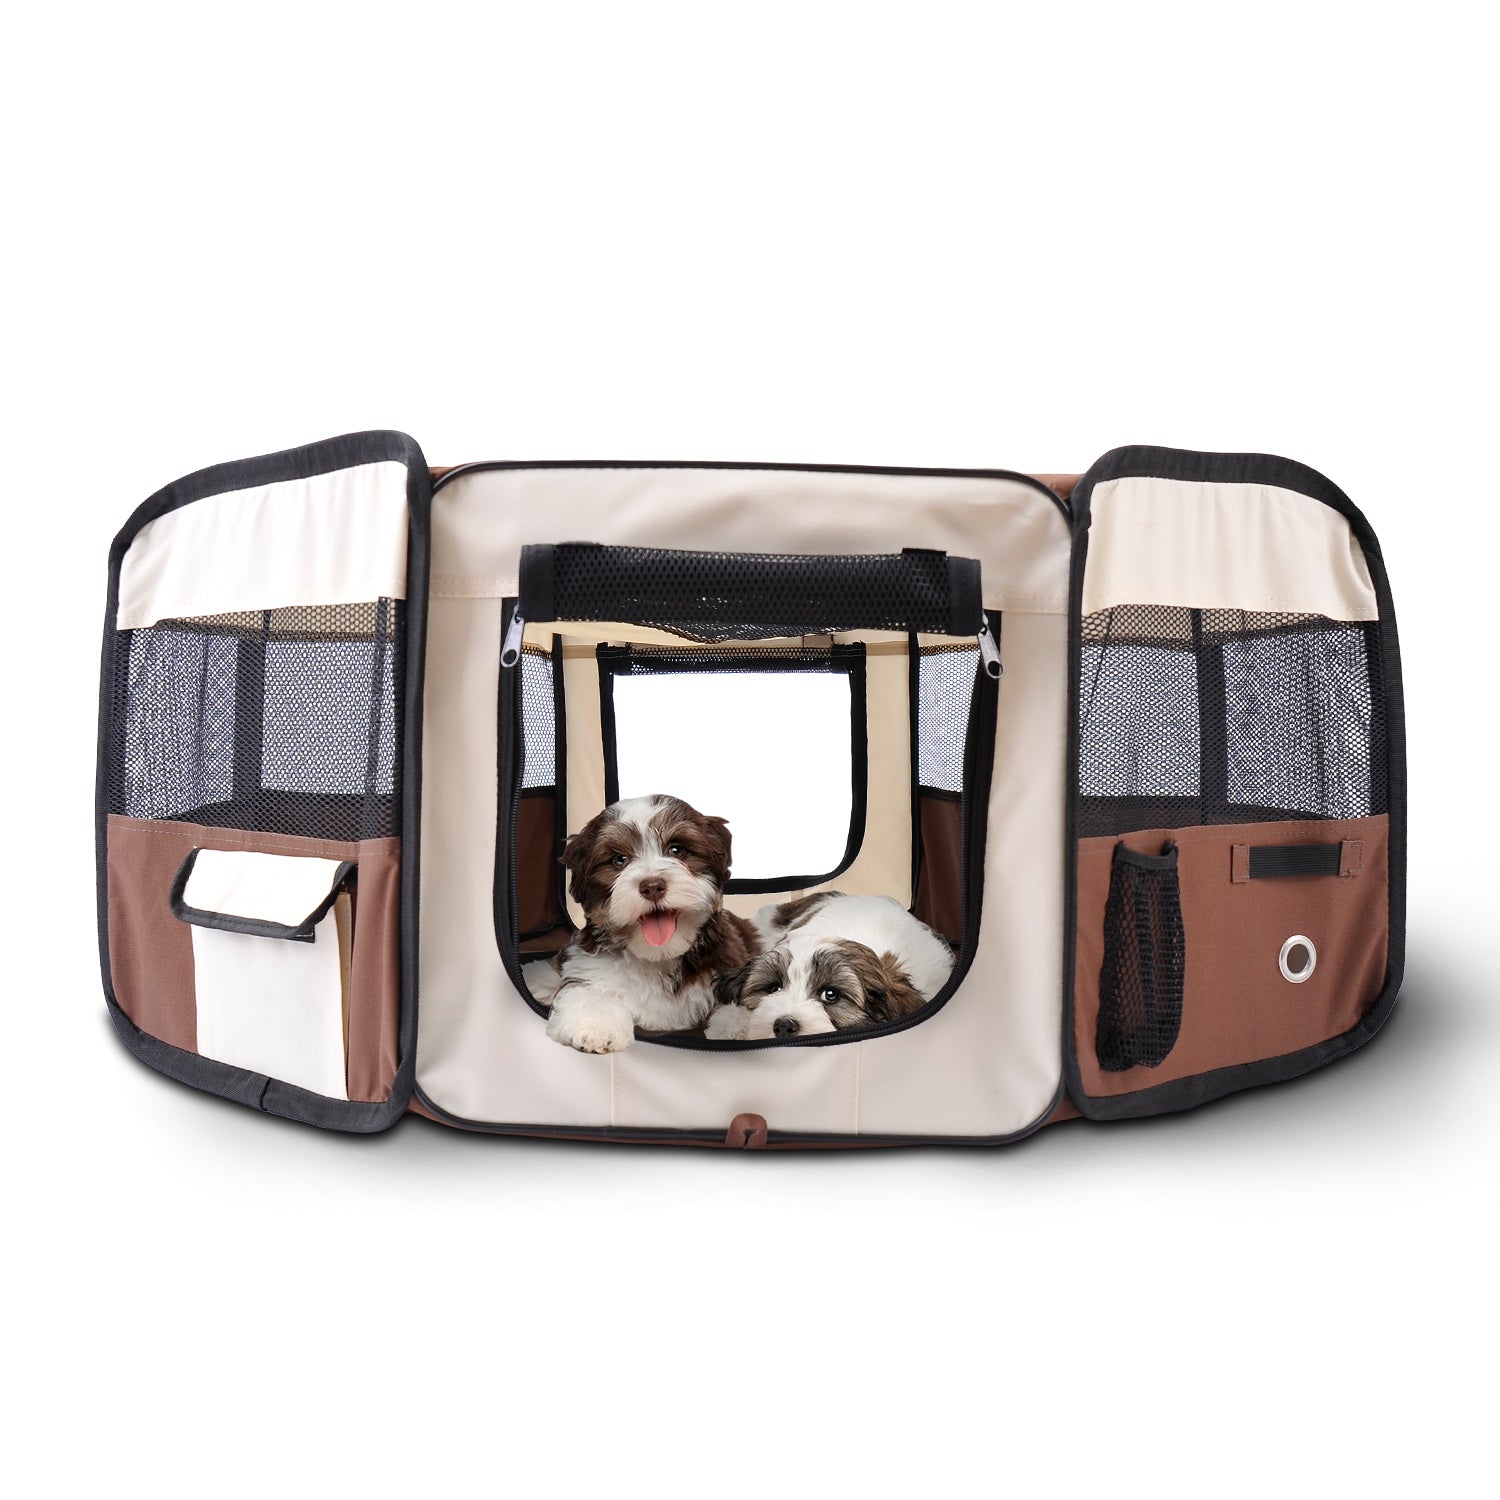 HOMCOM Fabric Pet Dog Playpen (37cm x37cm x95cm)-Brown/Cream